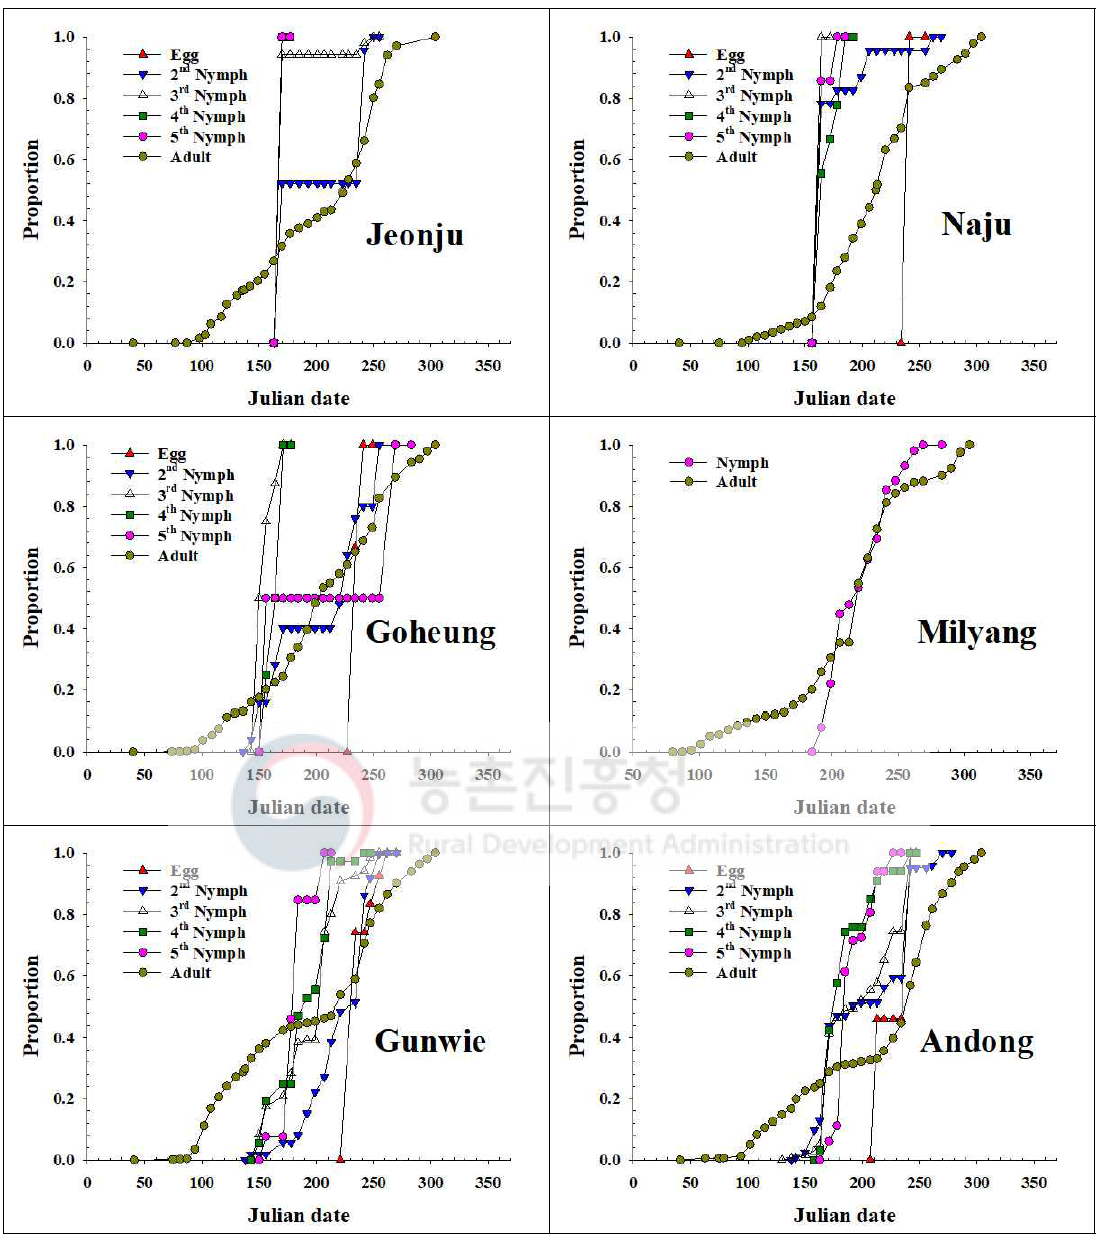 내륙지역 톱다리개미허리노린재 발육단계별 개체수 누적증가 비교(2017)